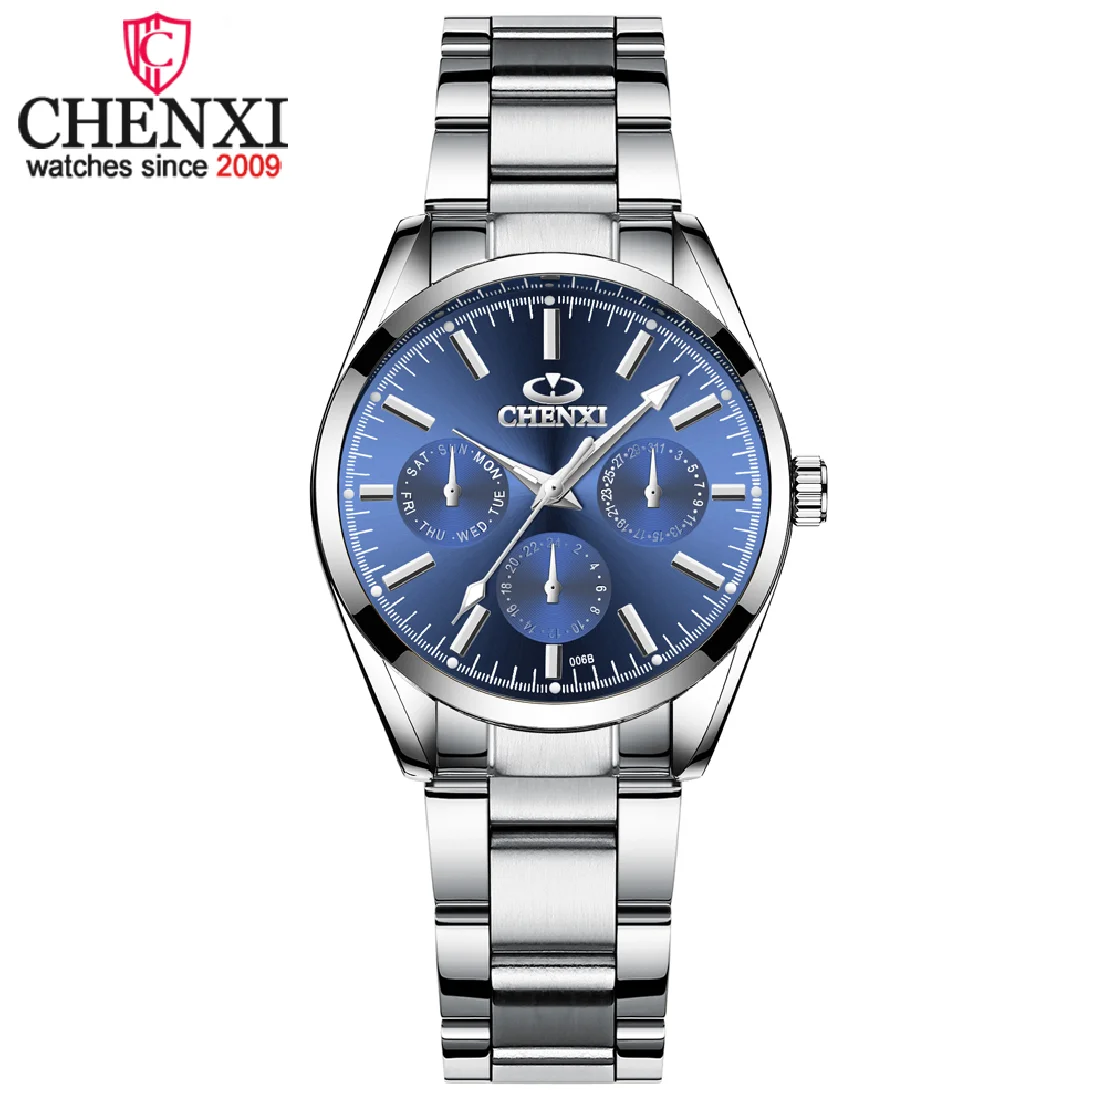 CHENXI Luxury Stainless Steel Watch For Women Pink Ladies Business Analog Watches Quartz Movement Relogio Feminino